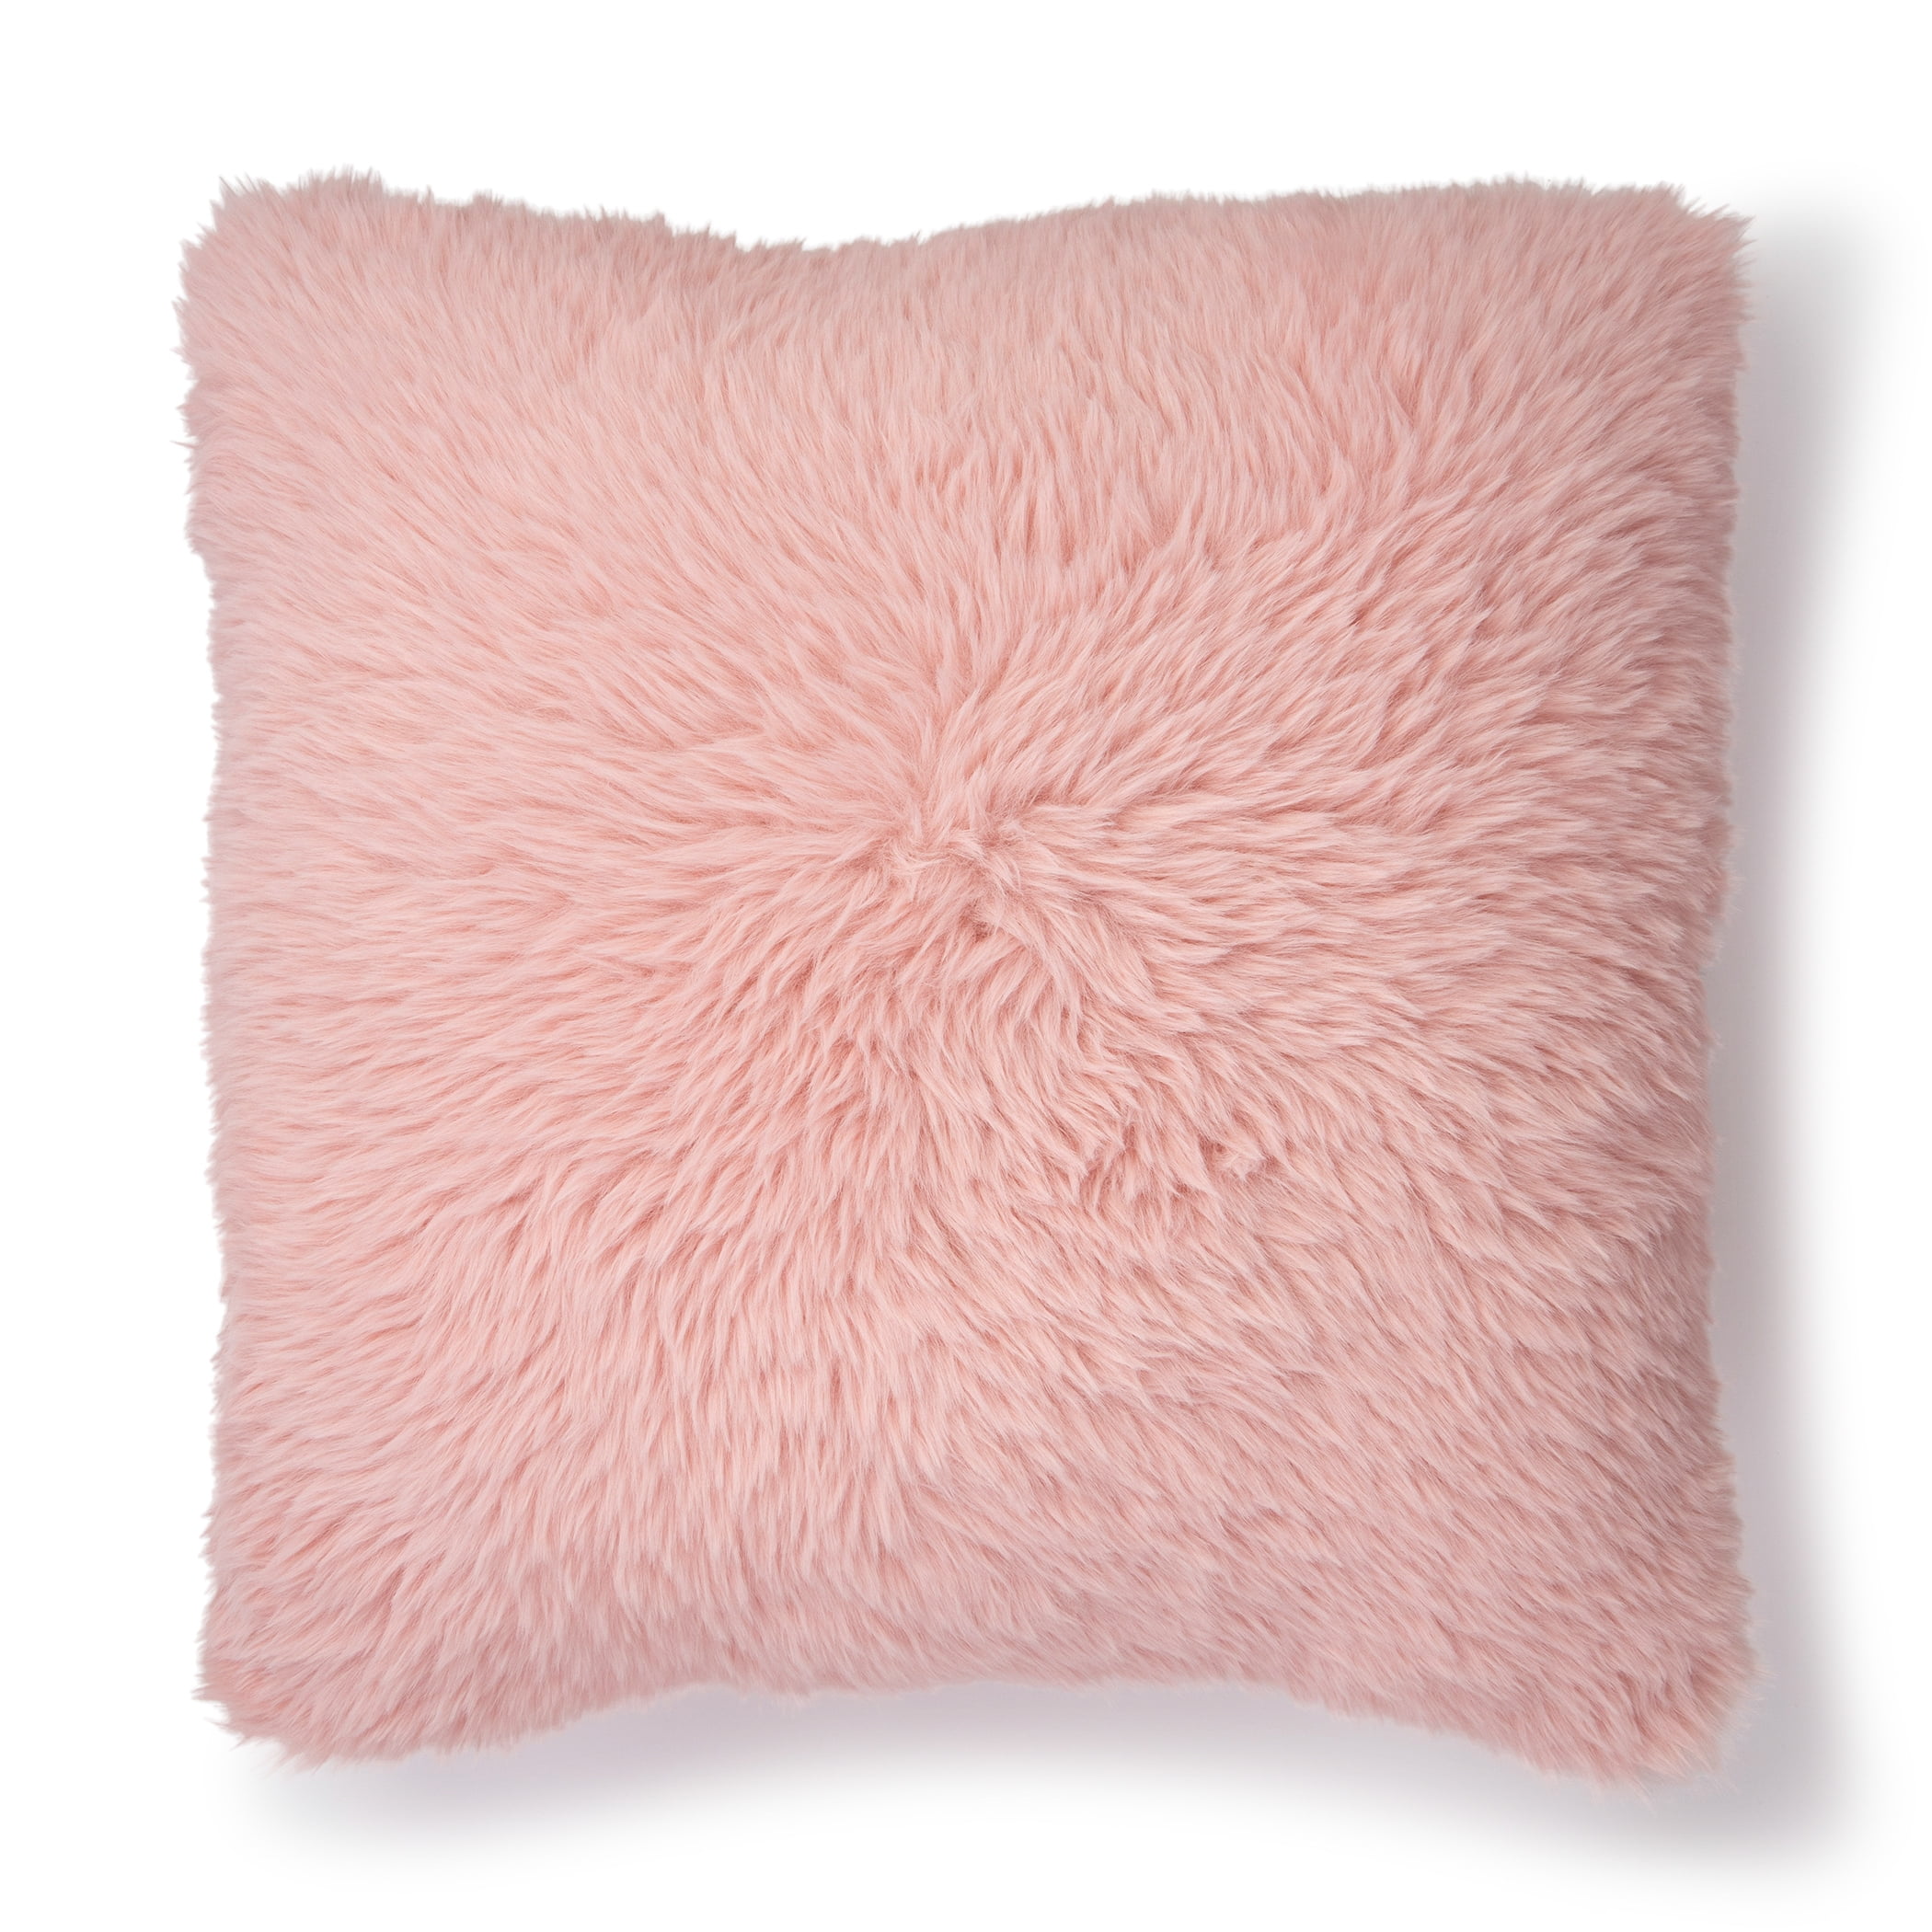 Mainstays Square, High Pile, Faux Rabbit Fur, Decorative Pillow, 17